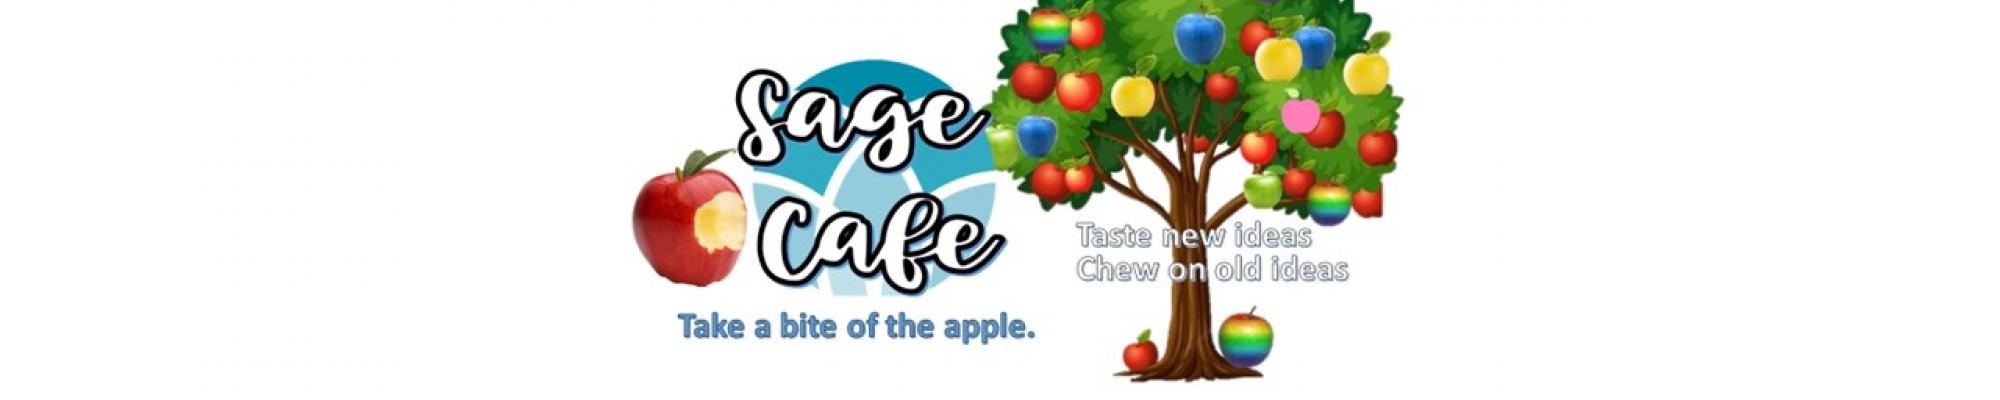 SAge cafe apple tree